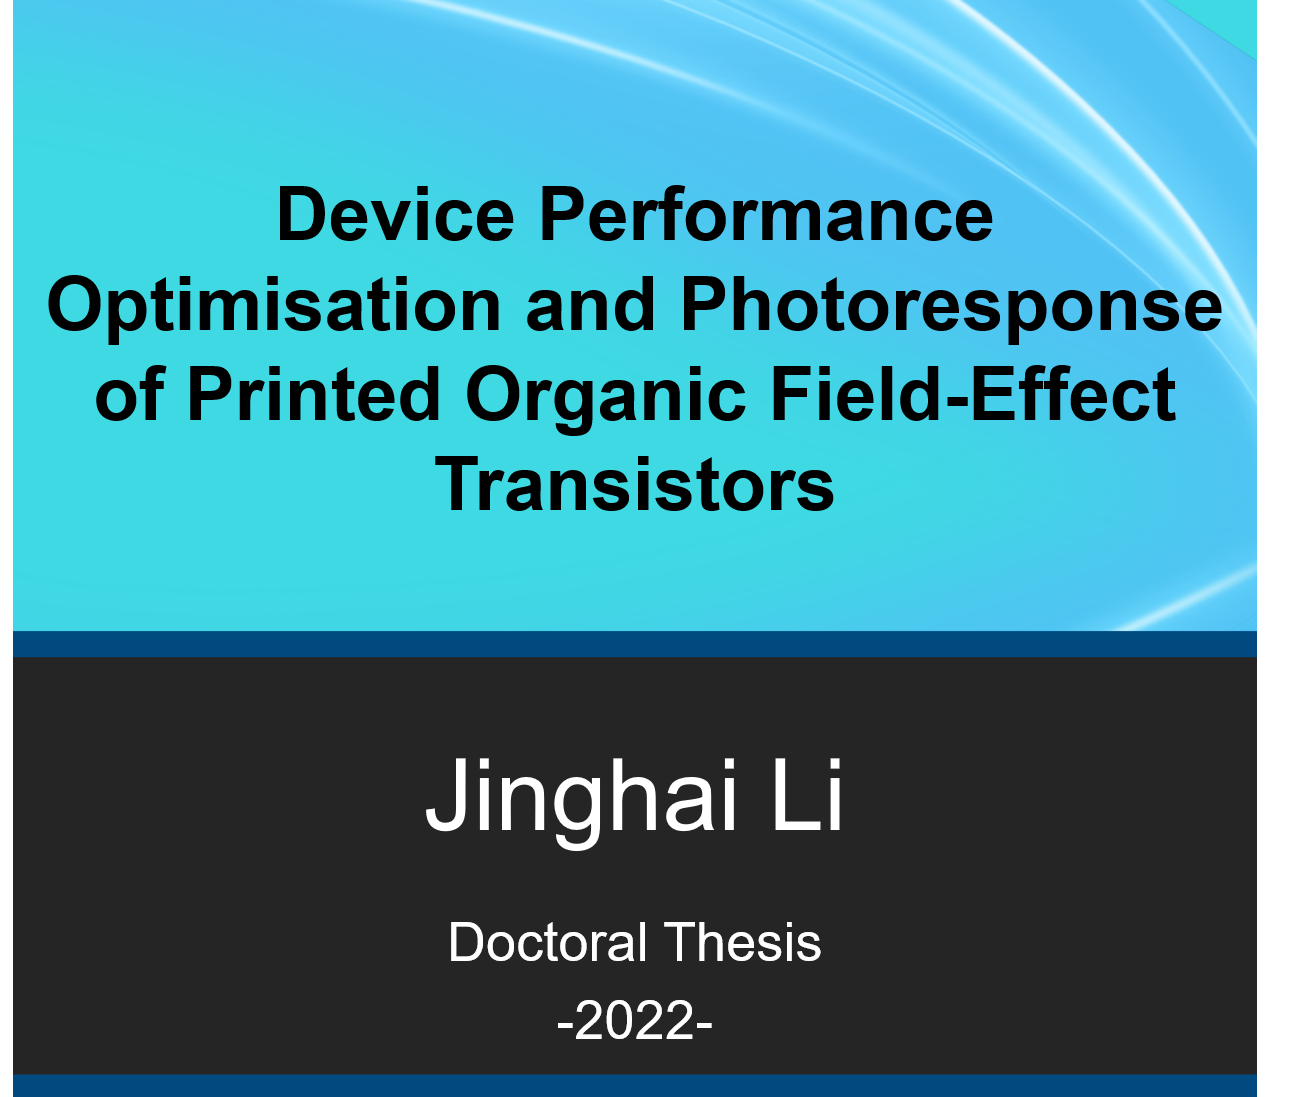 Congratulations to Dr. Li! Excellent work Jinghai!